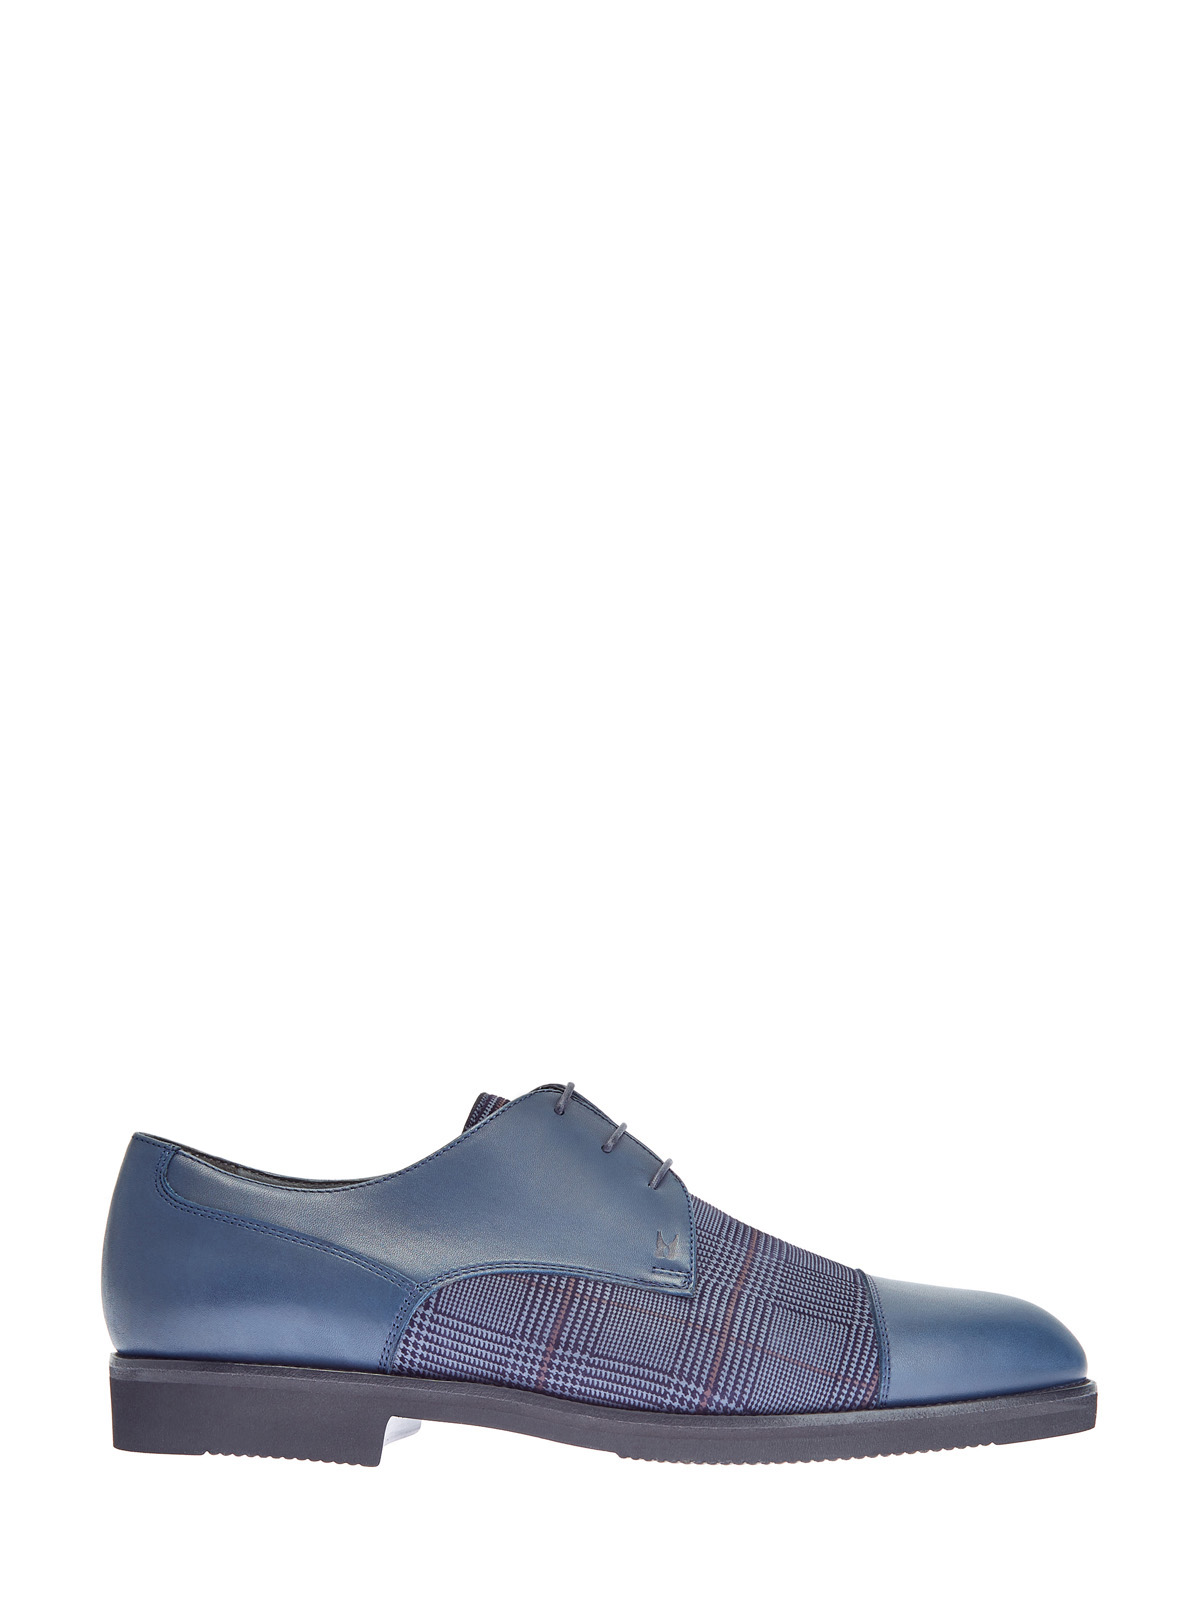 Кожаные туфли-дерби с принтом «Принц Уэльский» MORESCHI, цвет синий, размер 40.5;41;42;42.5;43;43.5;44 - фото 1